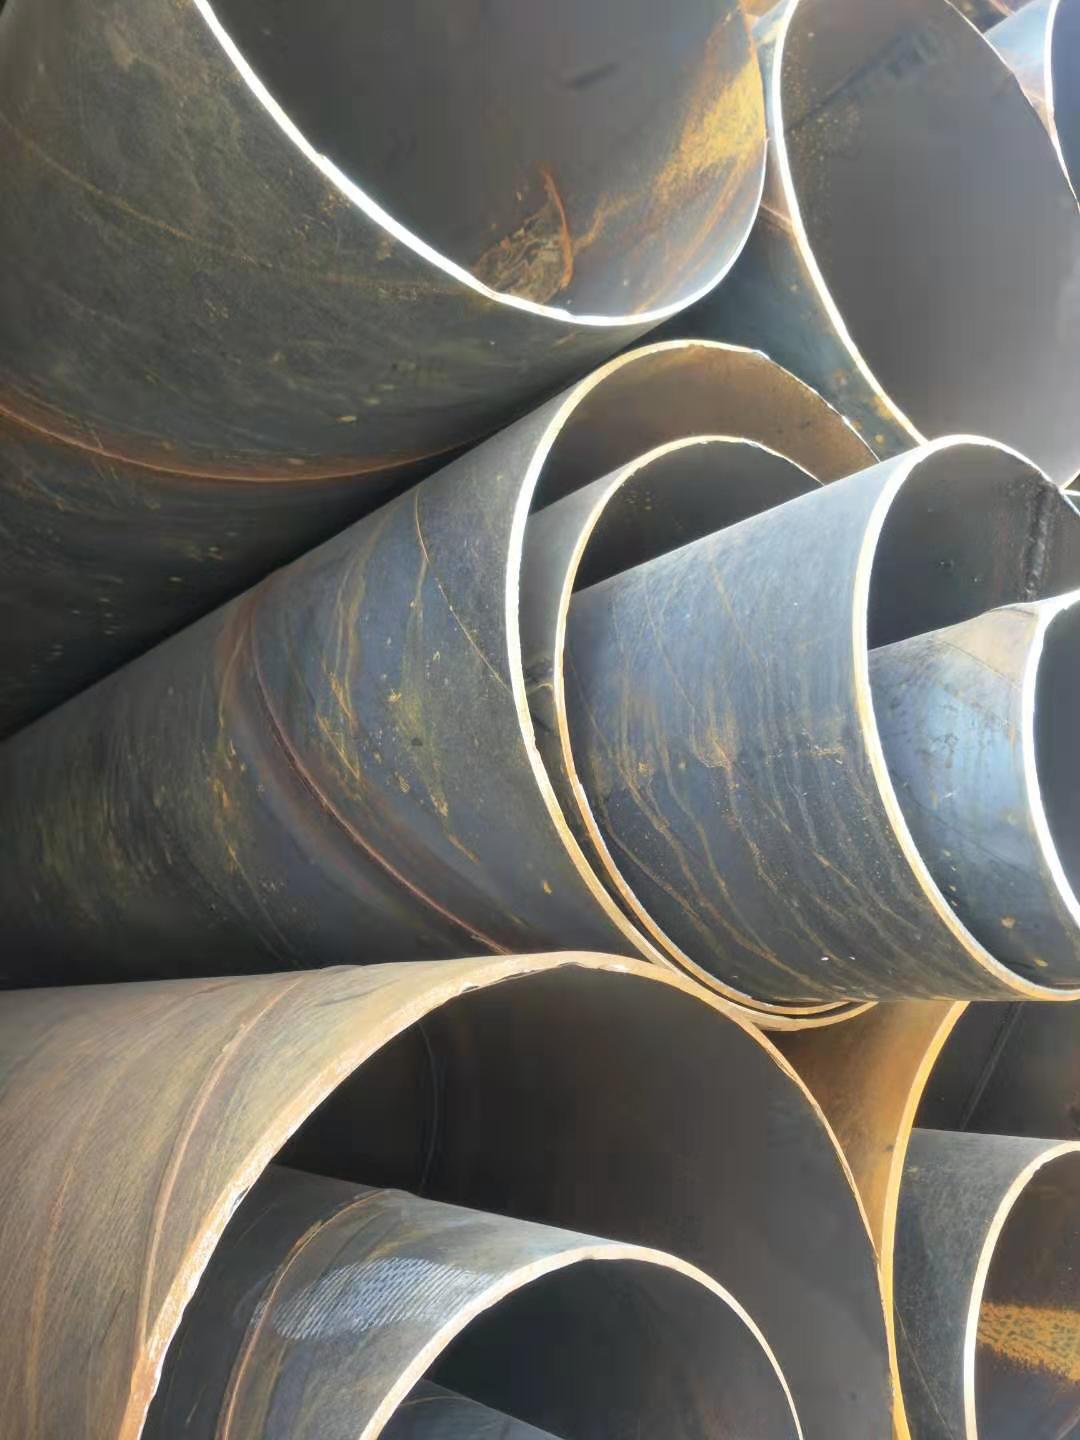 綿陽螺旋管生產廠家 云南鋼板樁出租 鋼材批發及加工配送一站式采